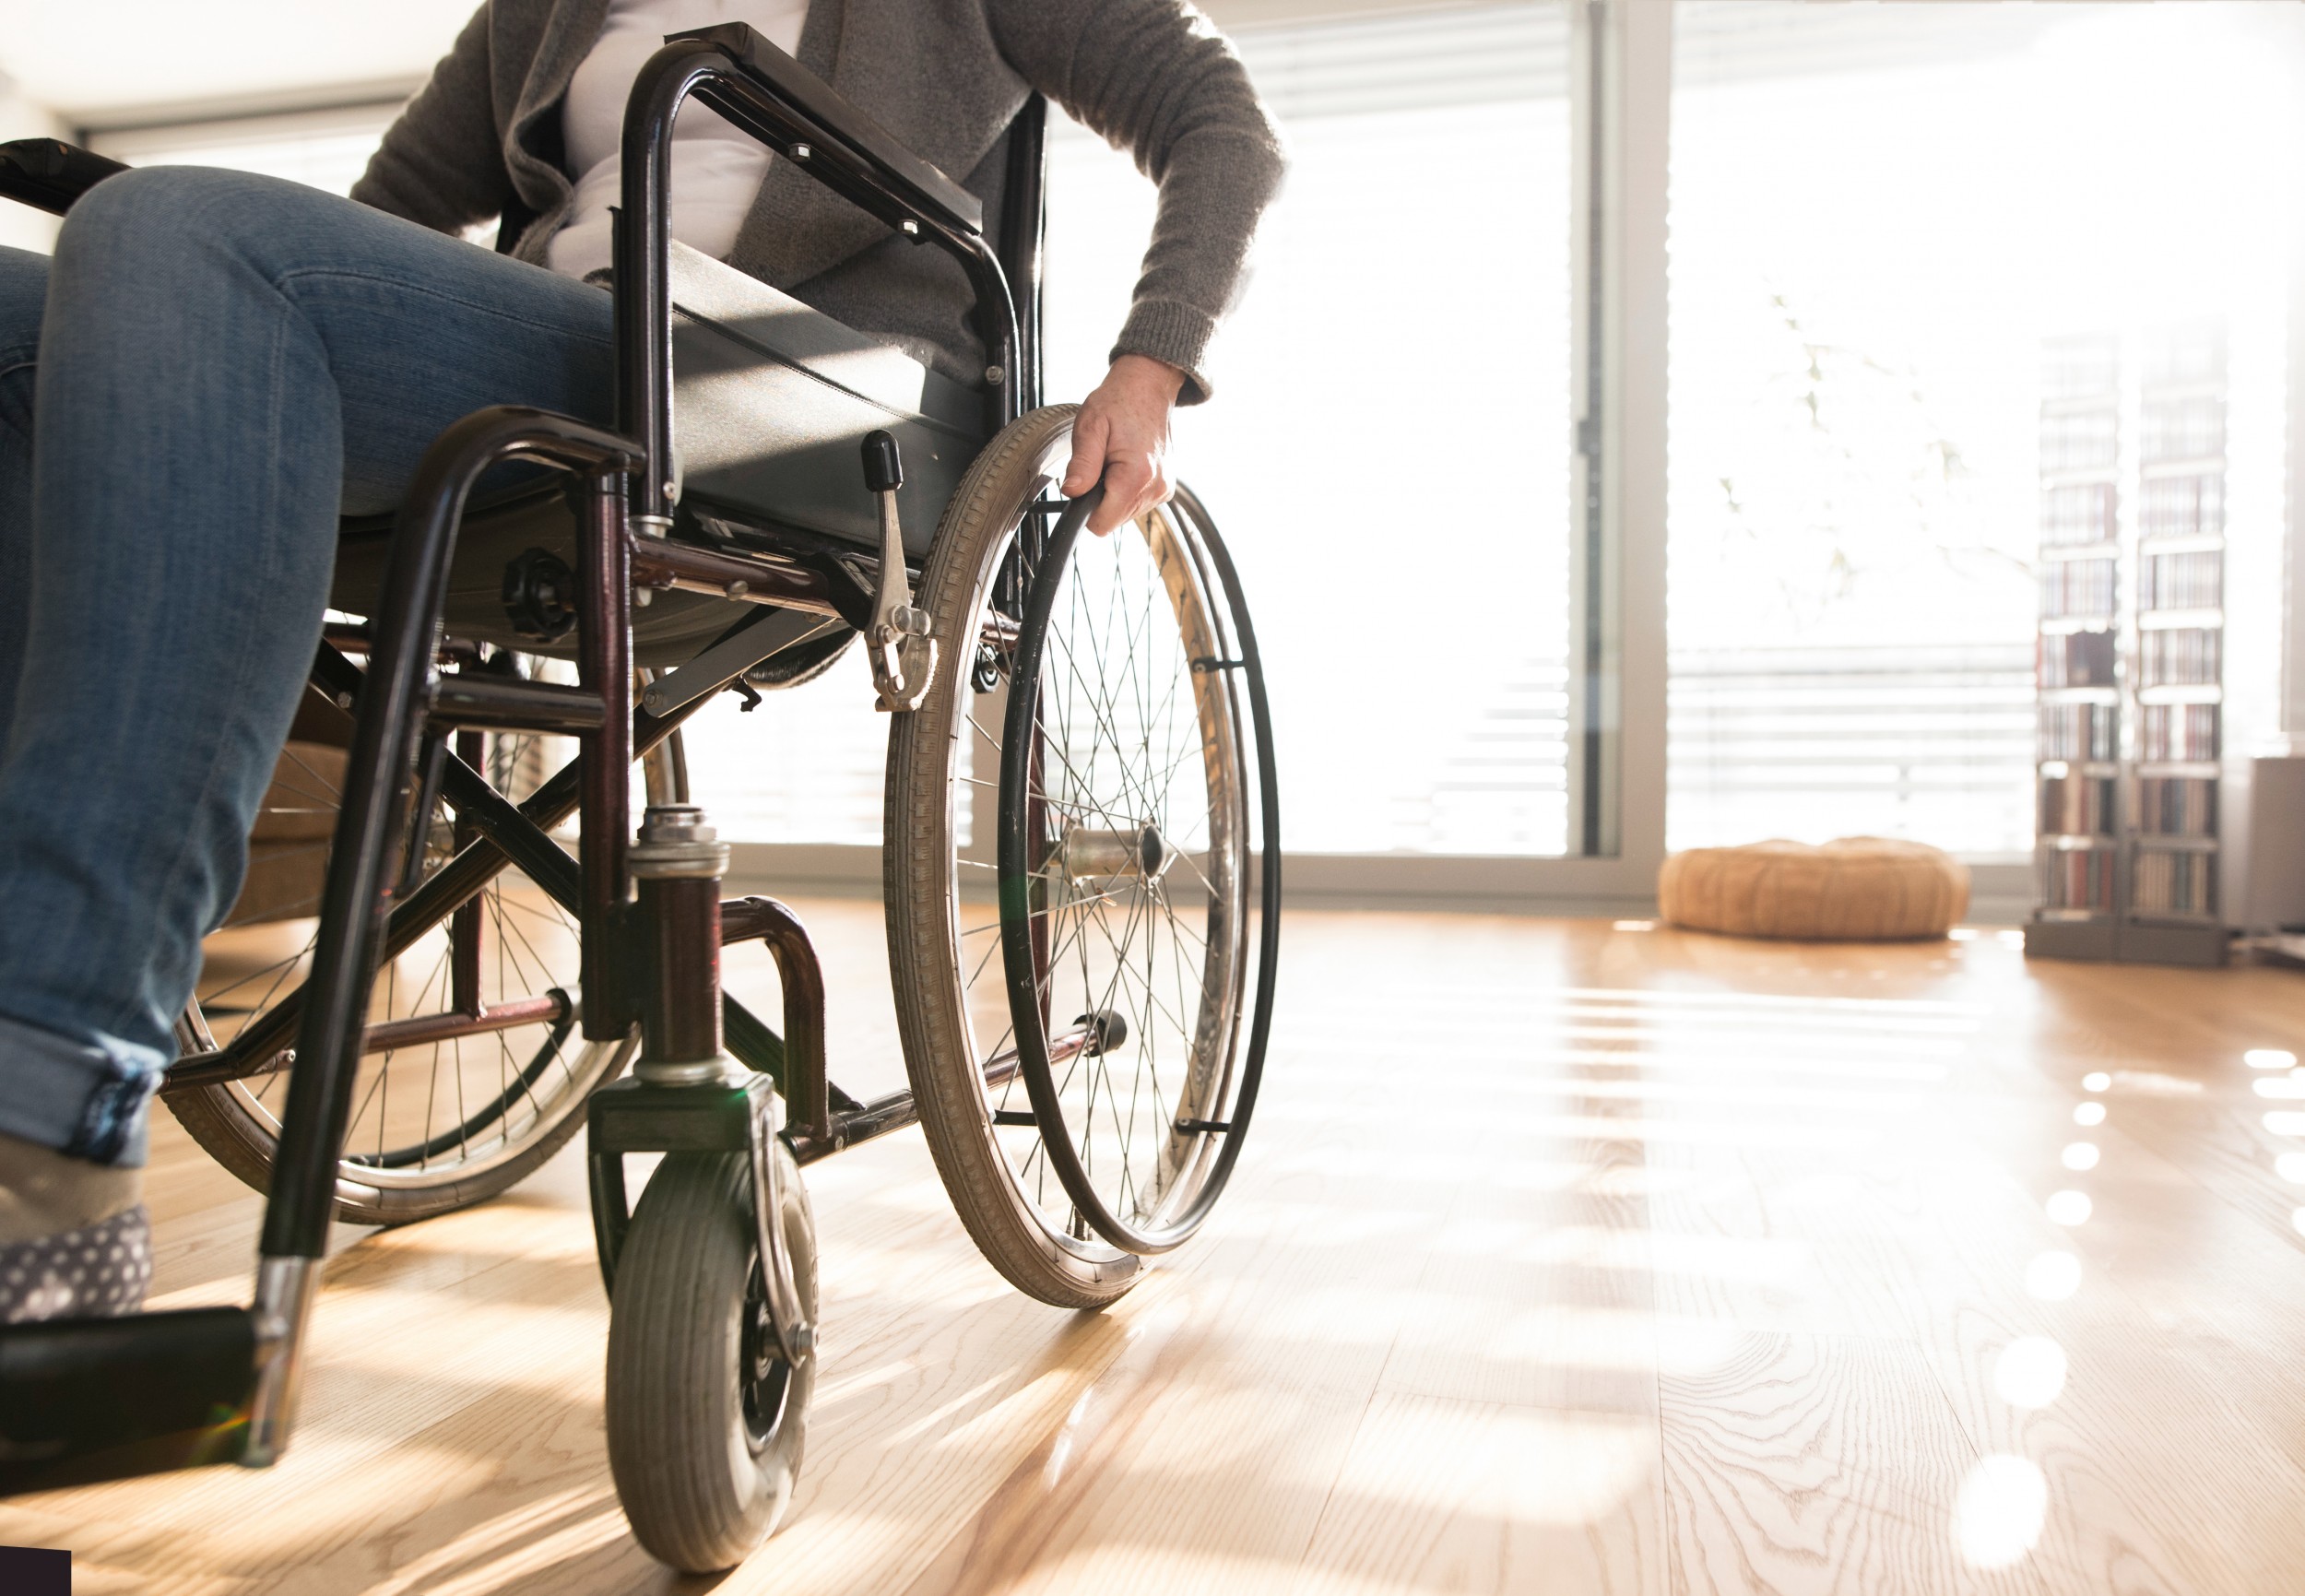 Comment Unia a-t-il défendu les droits des personnes en situation de handicap en 2019 ?